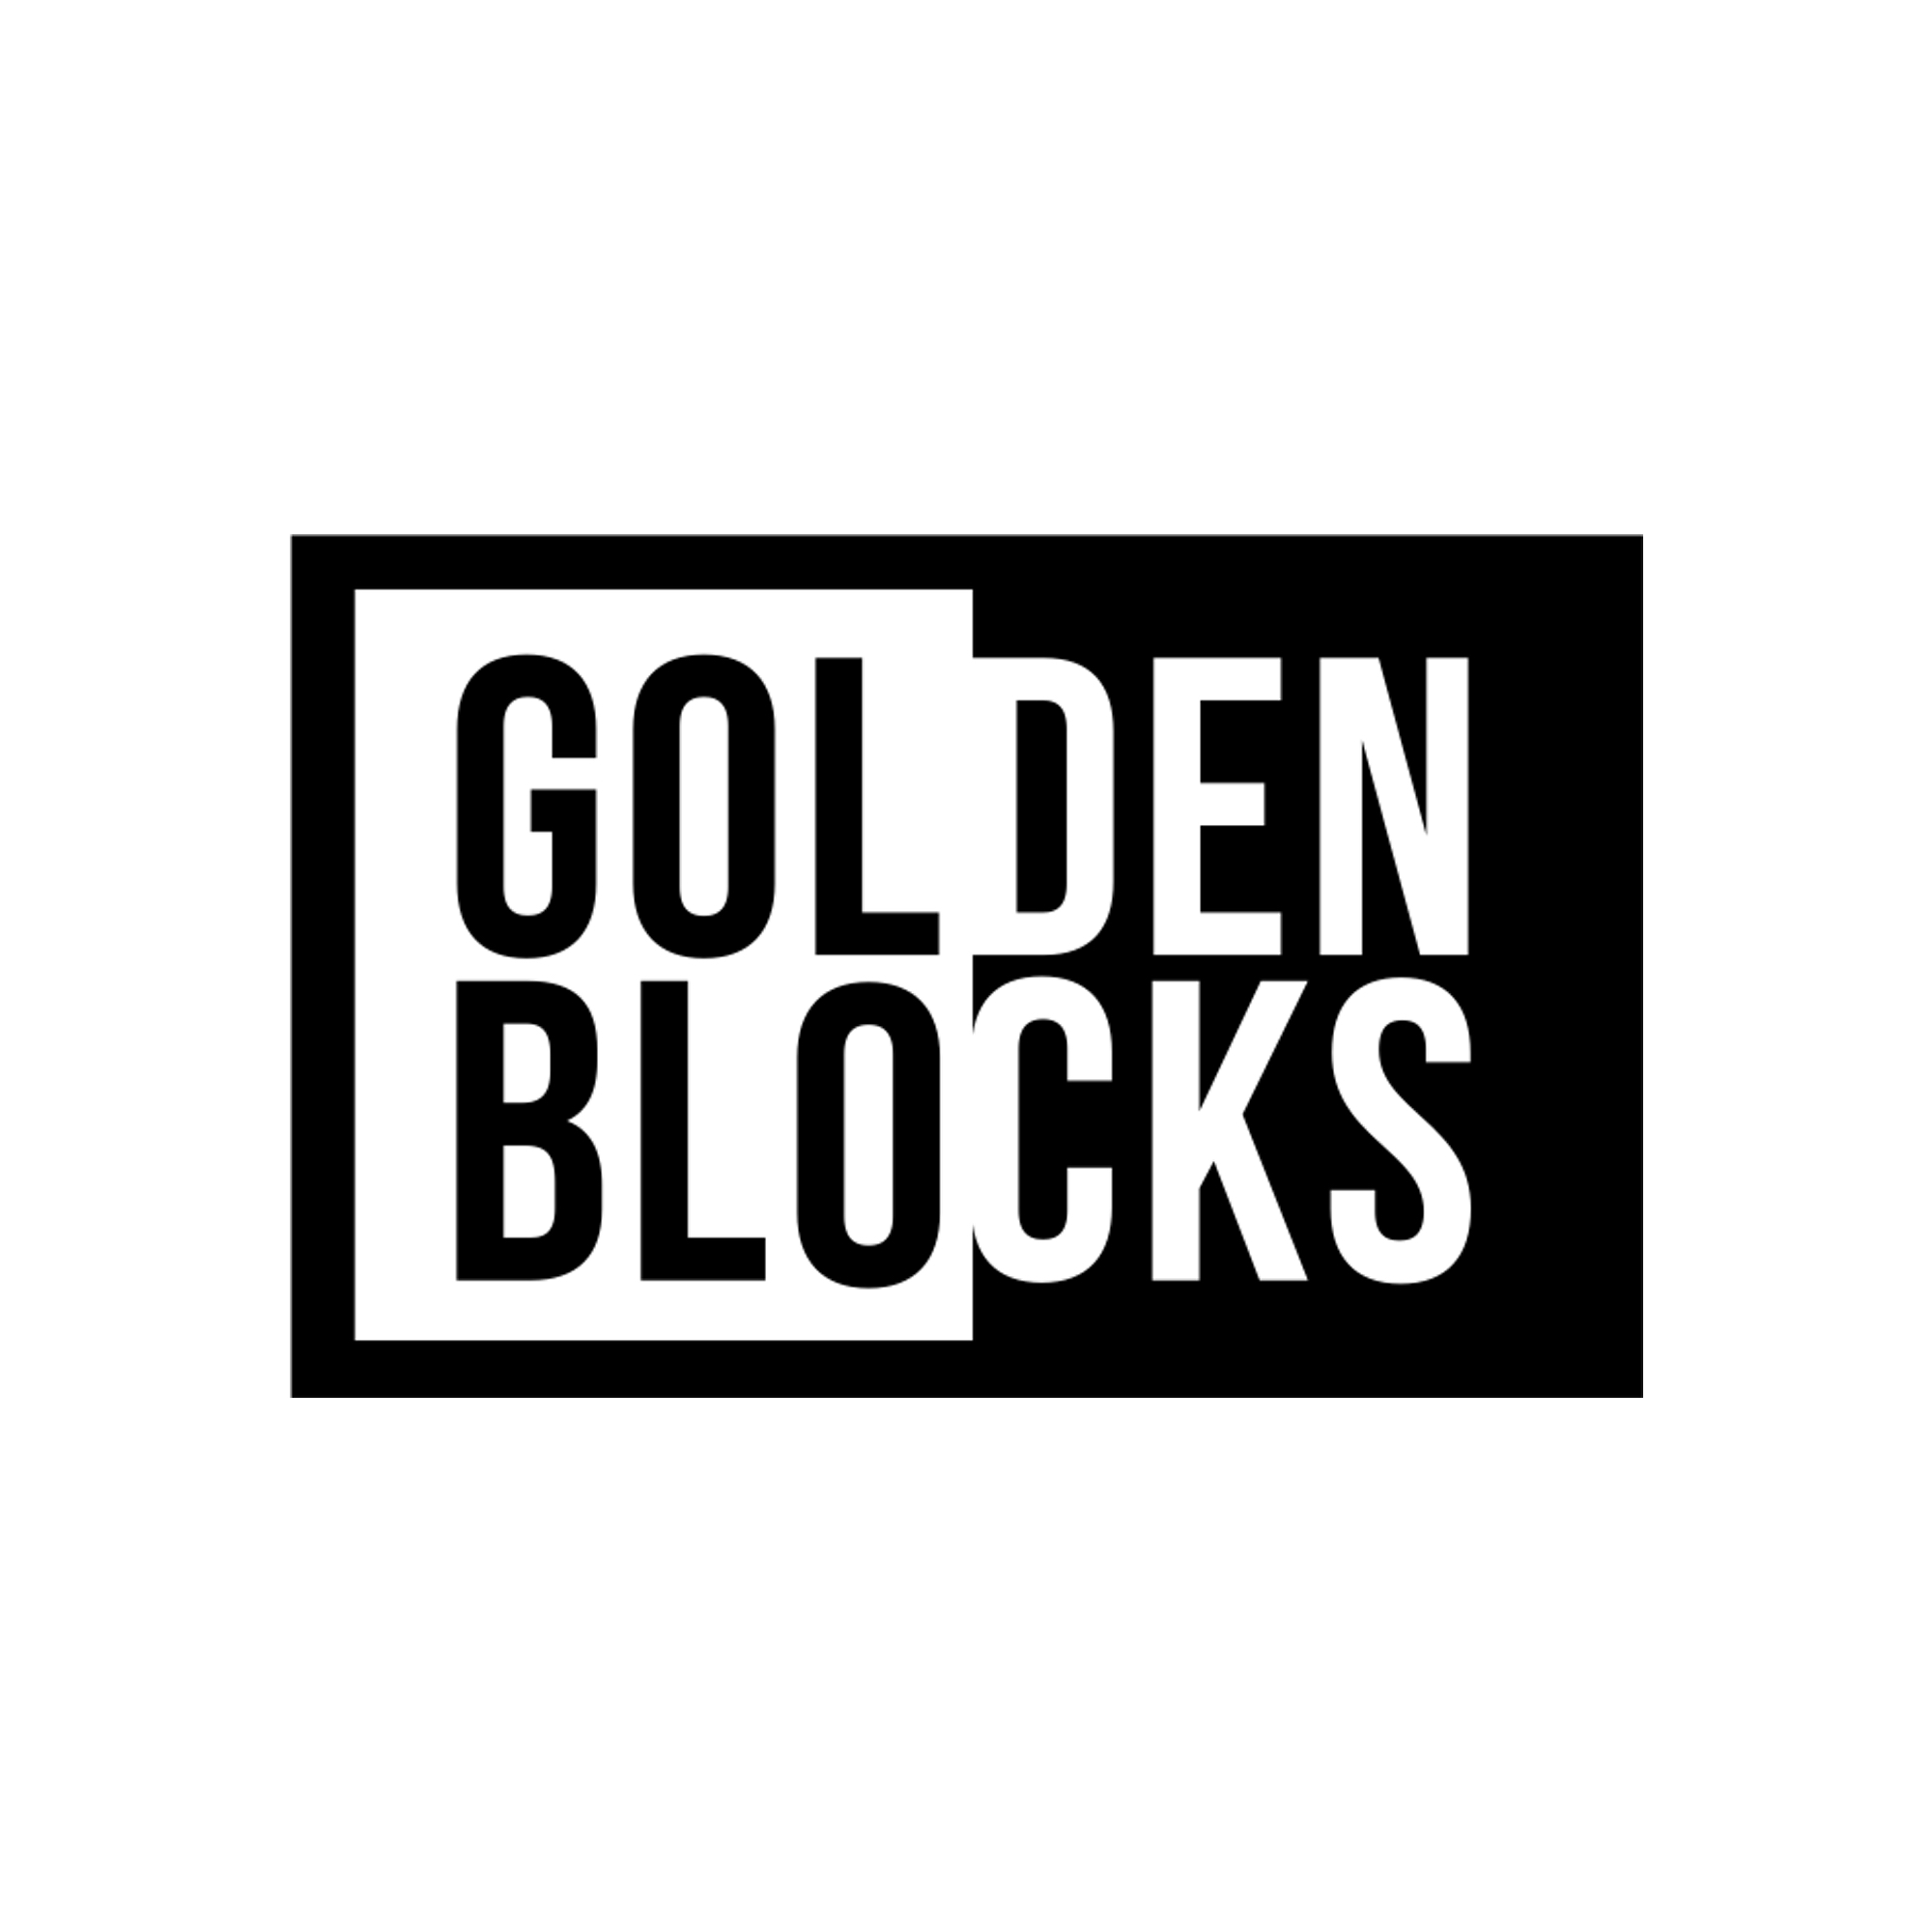 Golden Blocks Logo